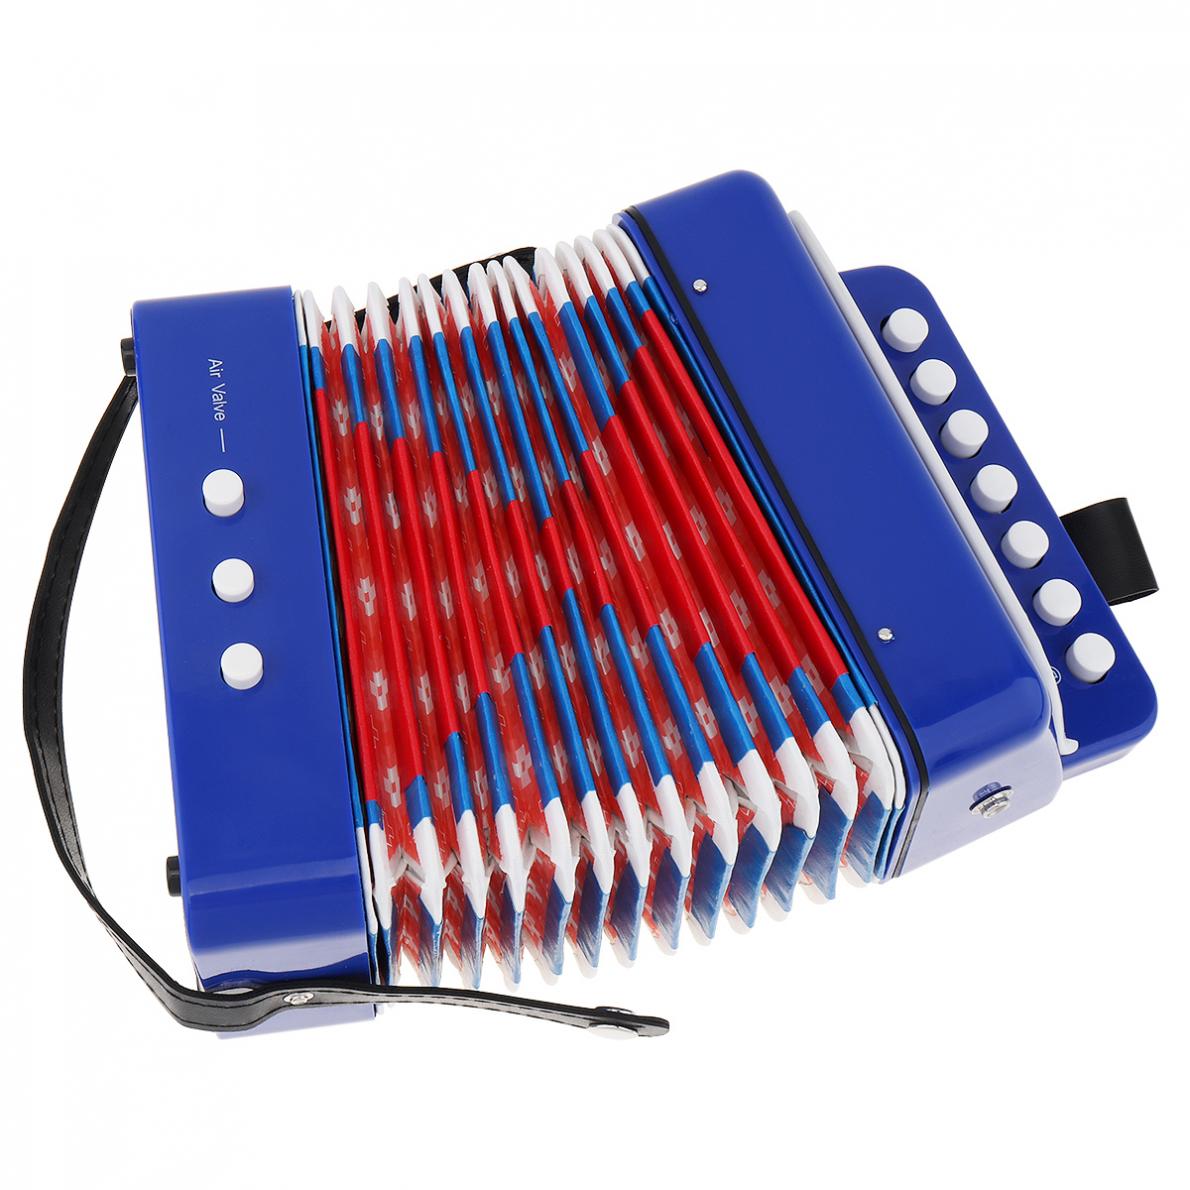 Mini accordéon pour enfants, 7 touches, 2 basses, Instrument de musique éducatif pour débutants, clavier: Bleu